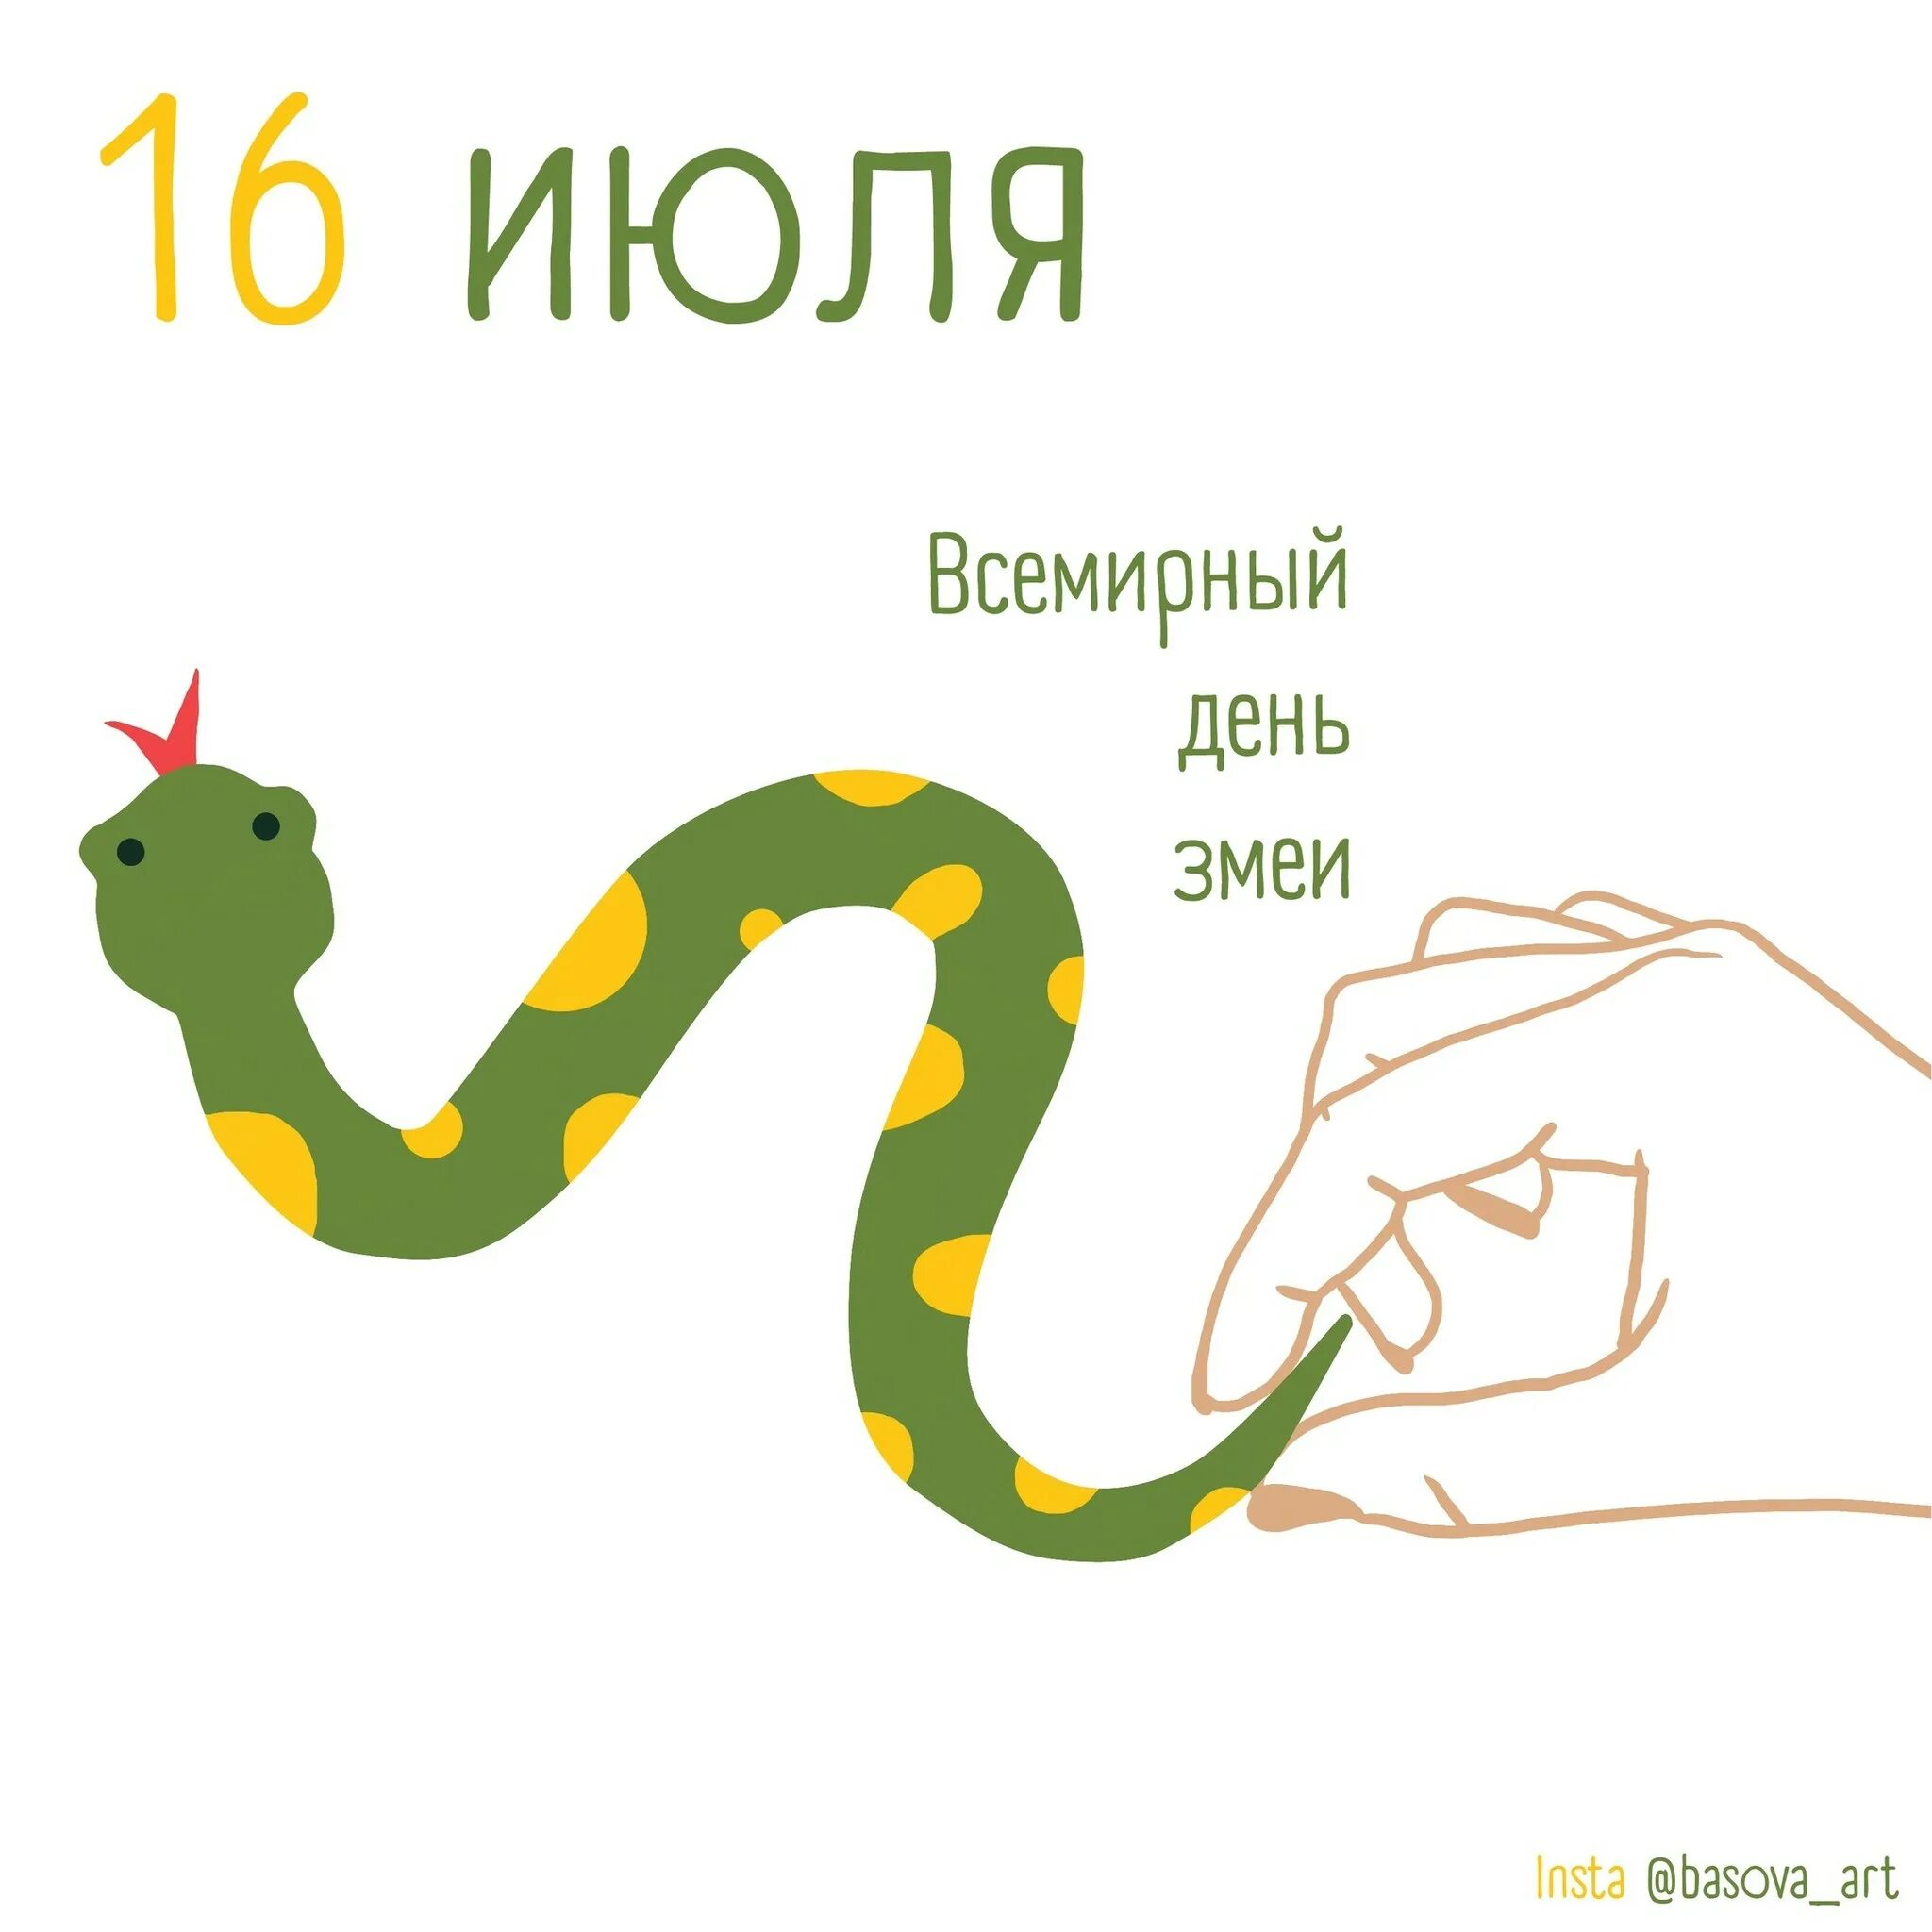 Всемирный день змеи (World Snake Day). Всемирный день змеи 16 июля. День змей 16 июля. С праздником змеи.